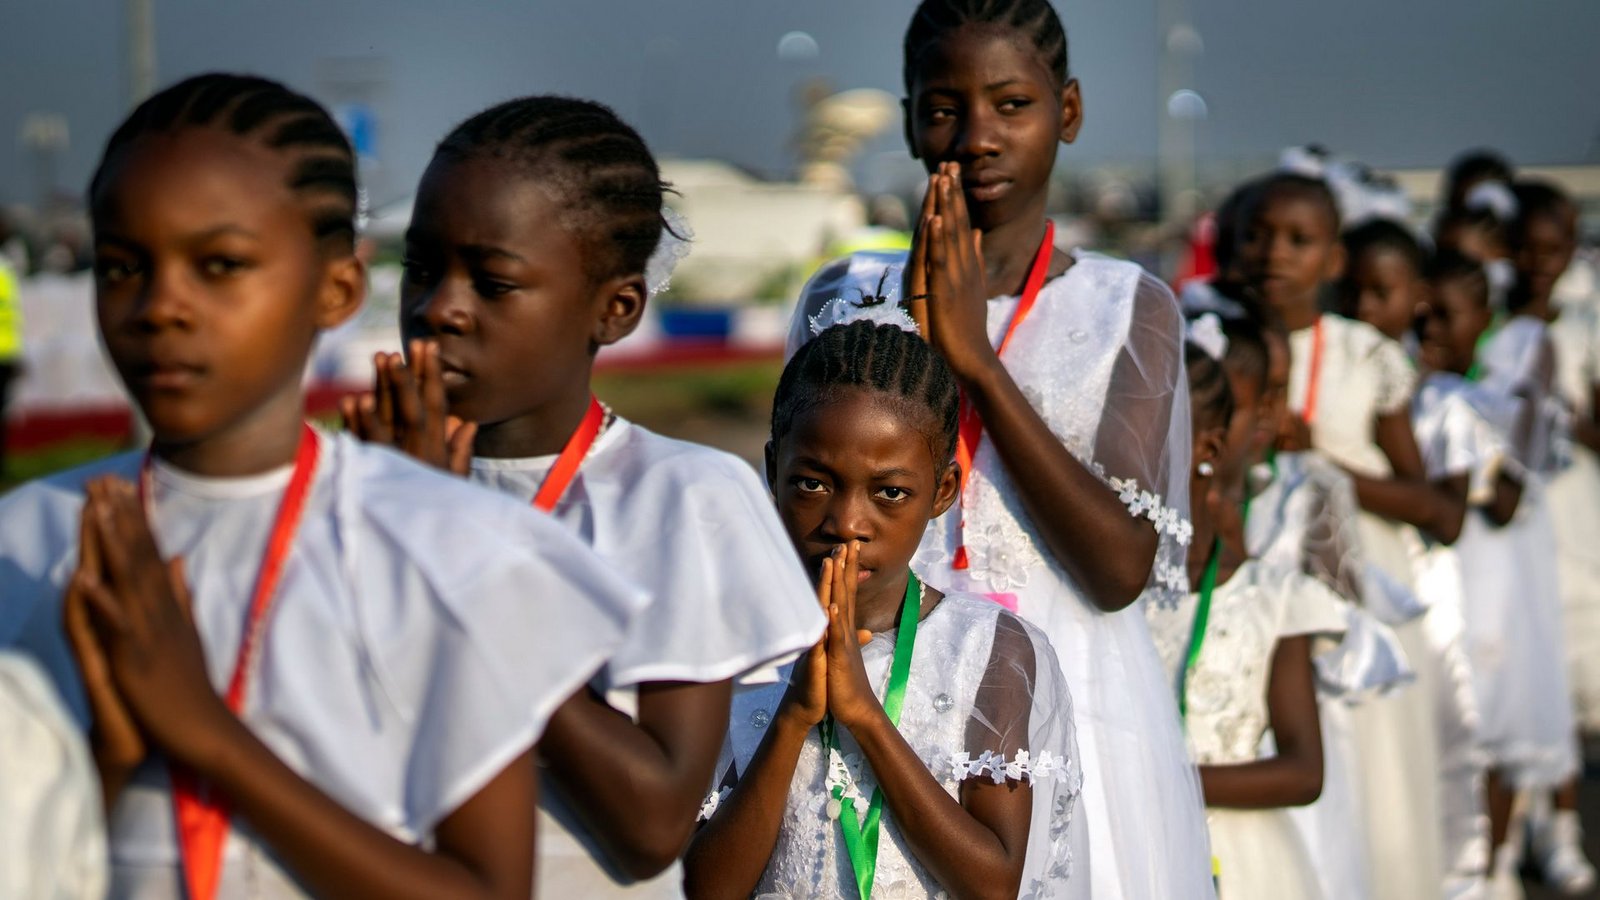 Gläubige versammeln sich am Flughafen Ndolo für eine Heilige Messe.Foto: Jerome Delay/AP/dpa